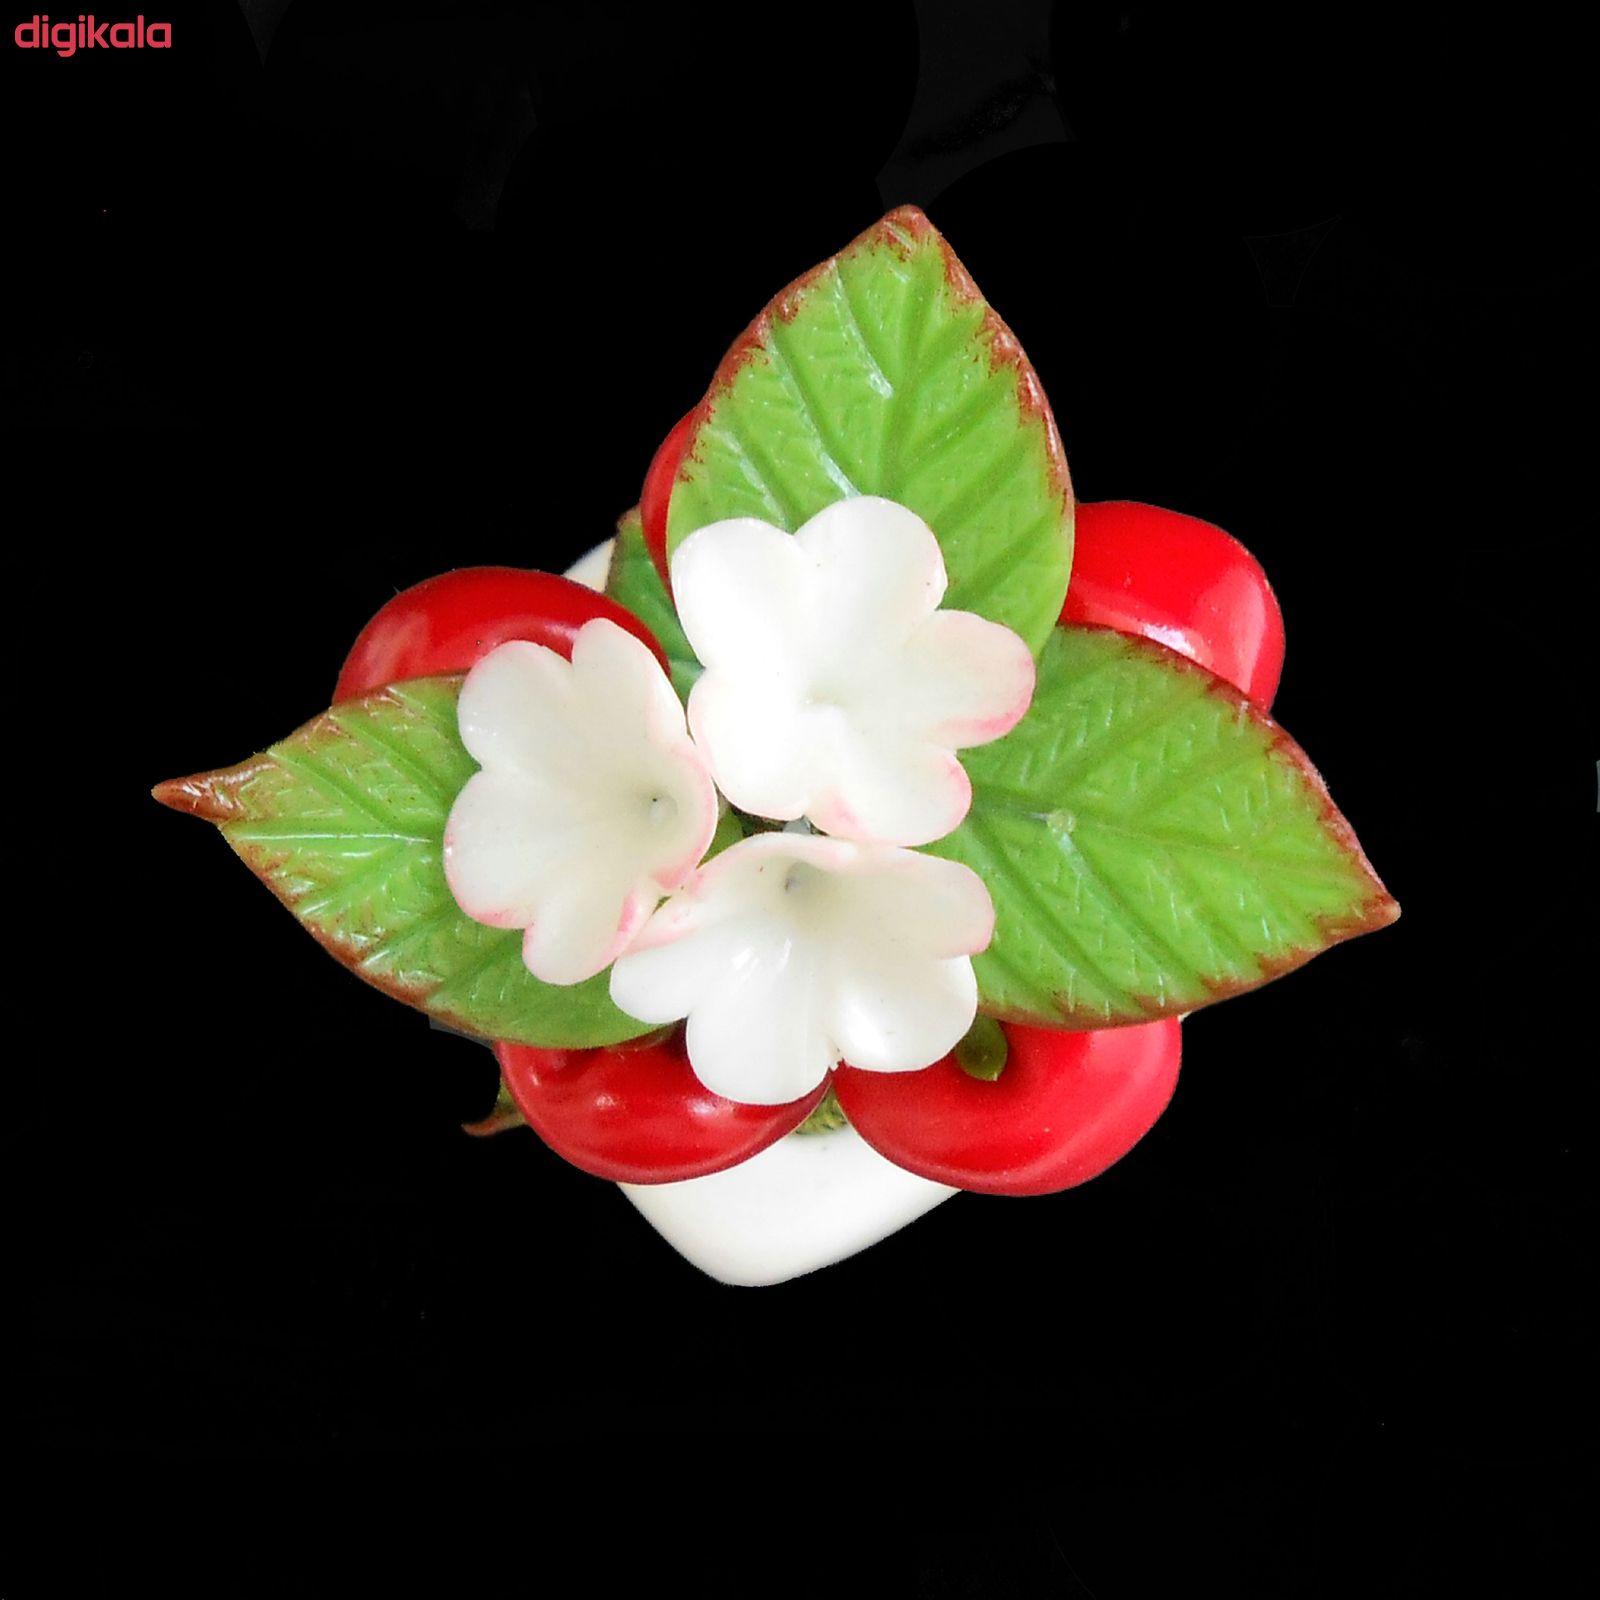  خرید اینترنتی با تخفیف ویژه گلدان به همراه گل مصنوعی مدل گیلاس